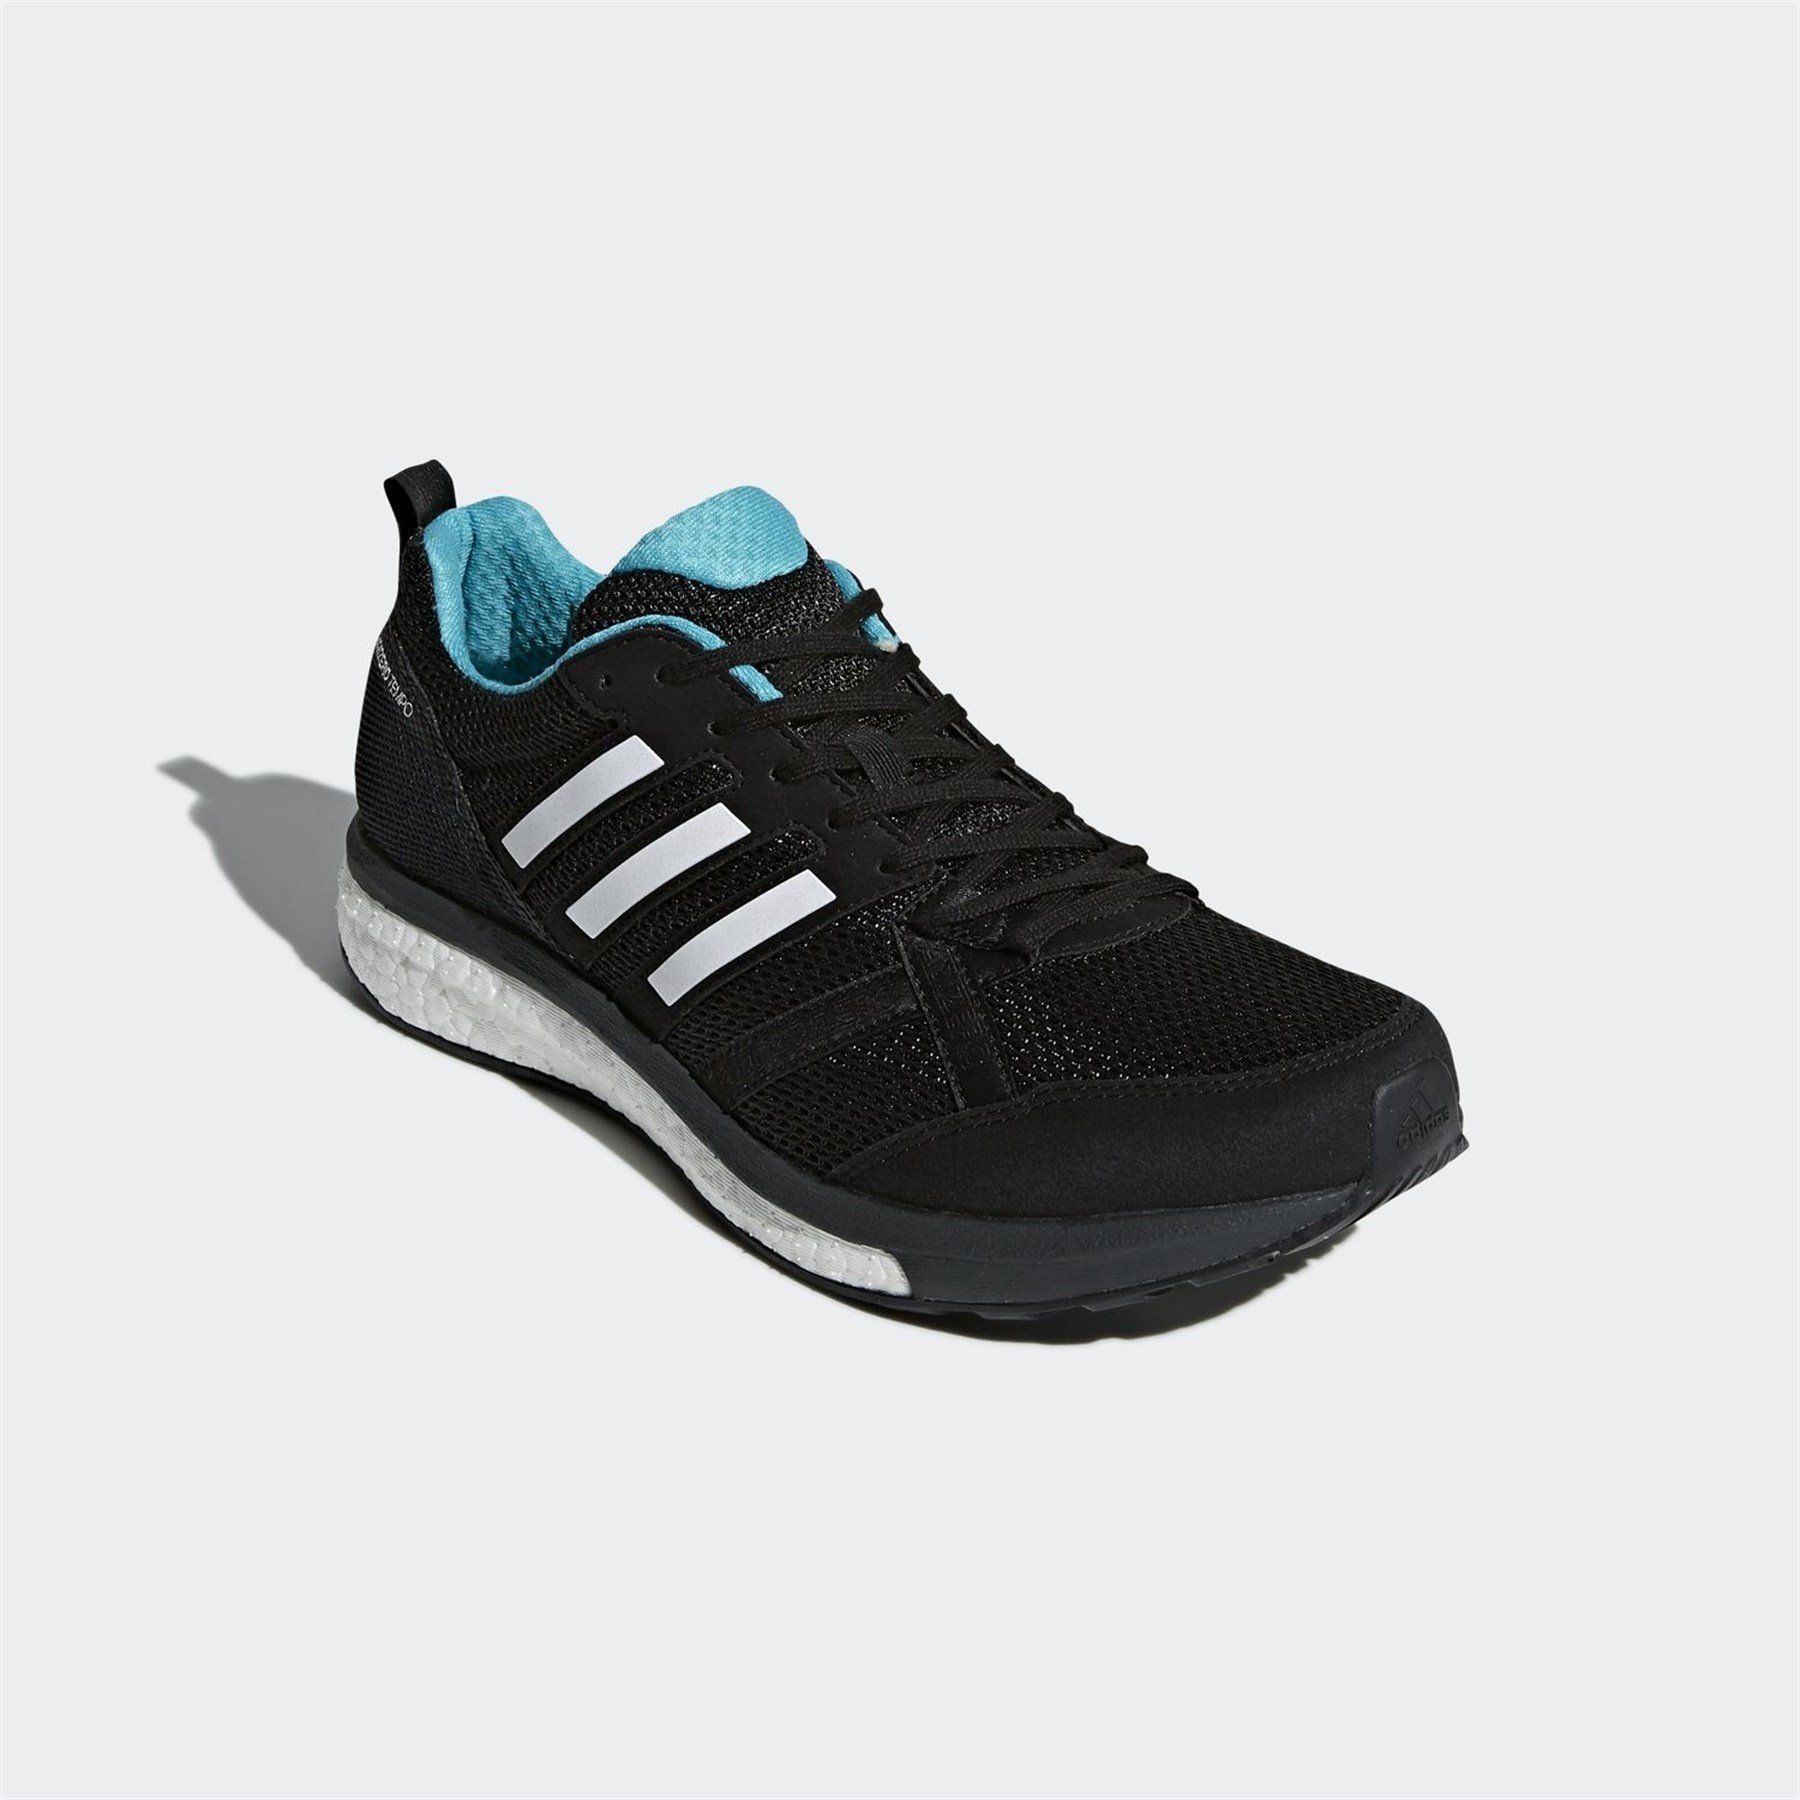 Adidas Erkek Koşu - Yürüyüş Ayakkabı Bb6649 Adizero Tempo 9 M